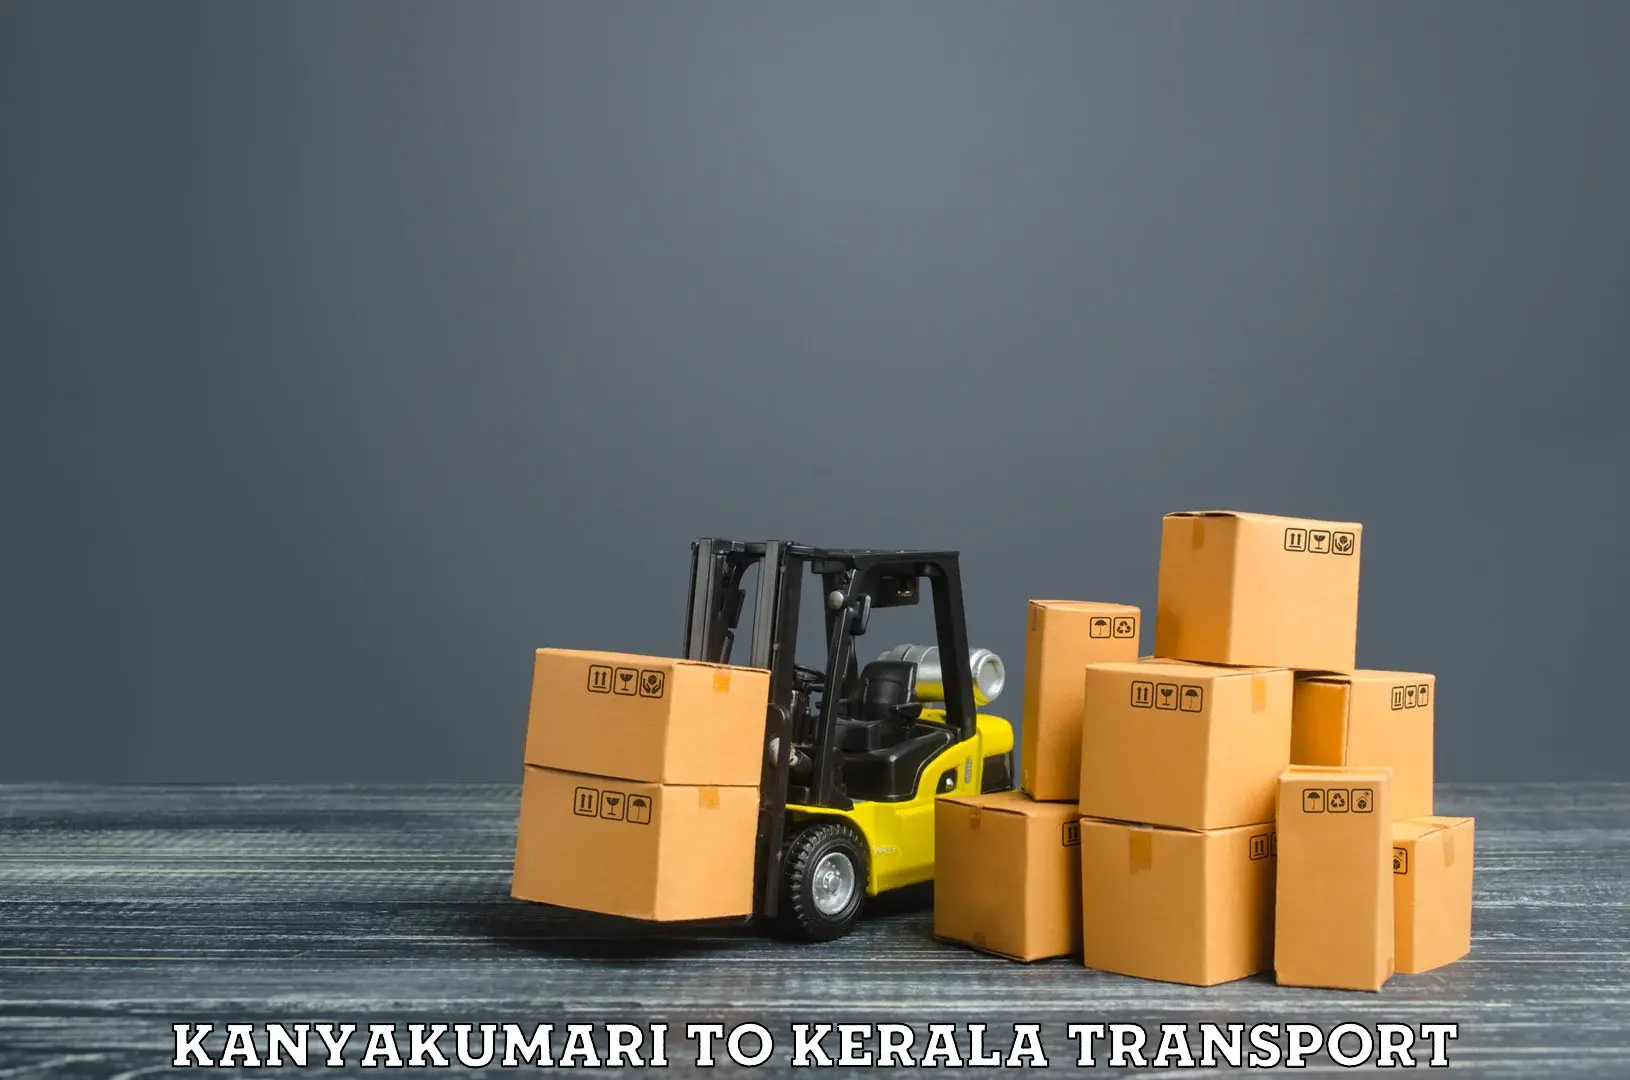 Cargo train transport services Kanyakumari to Kannur